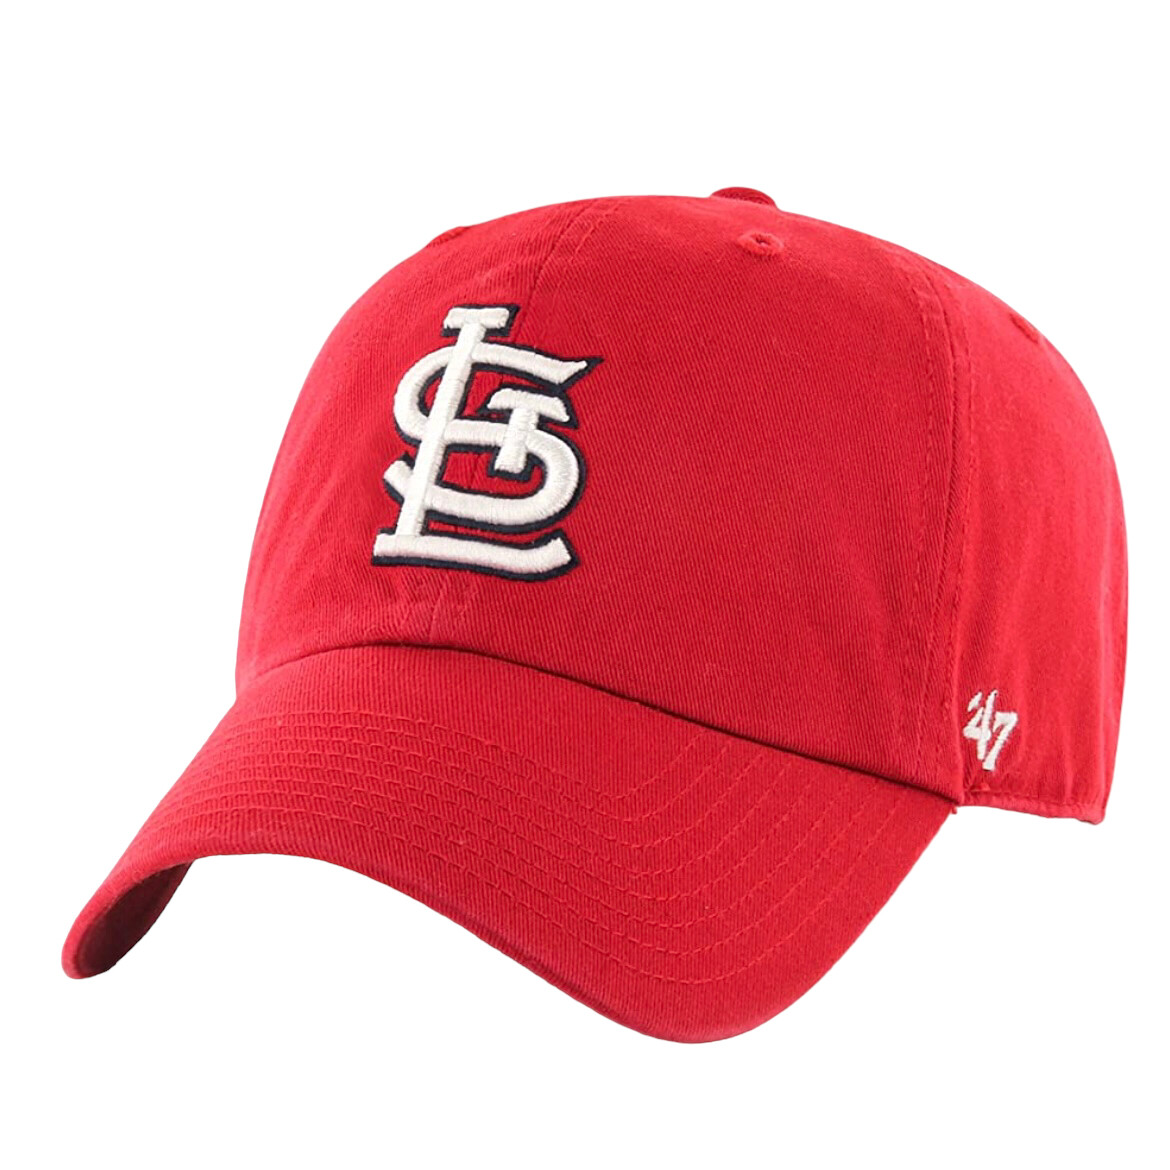 47 St. Louis Cardinals Clean Up Adjustable Hat